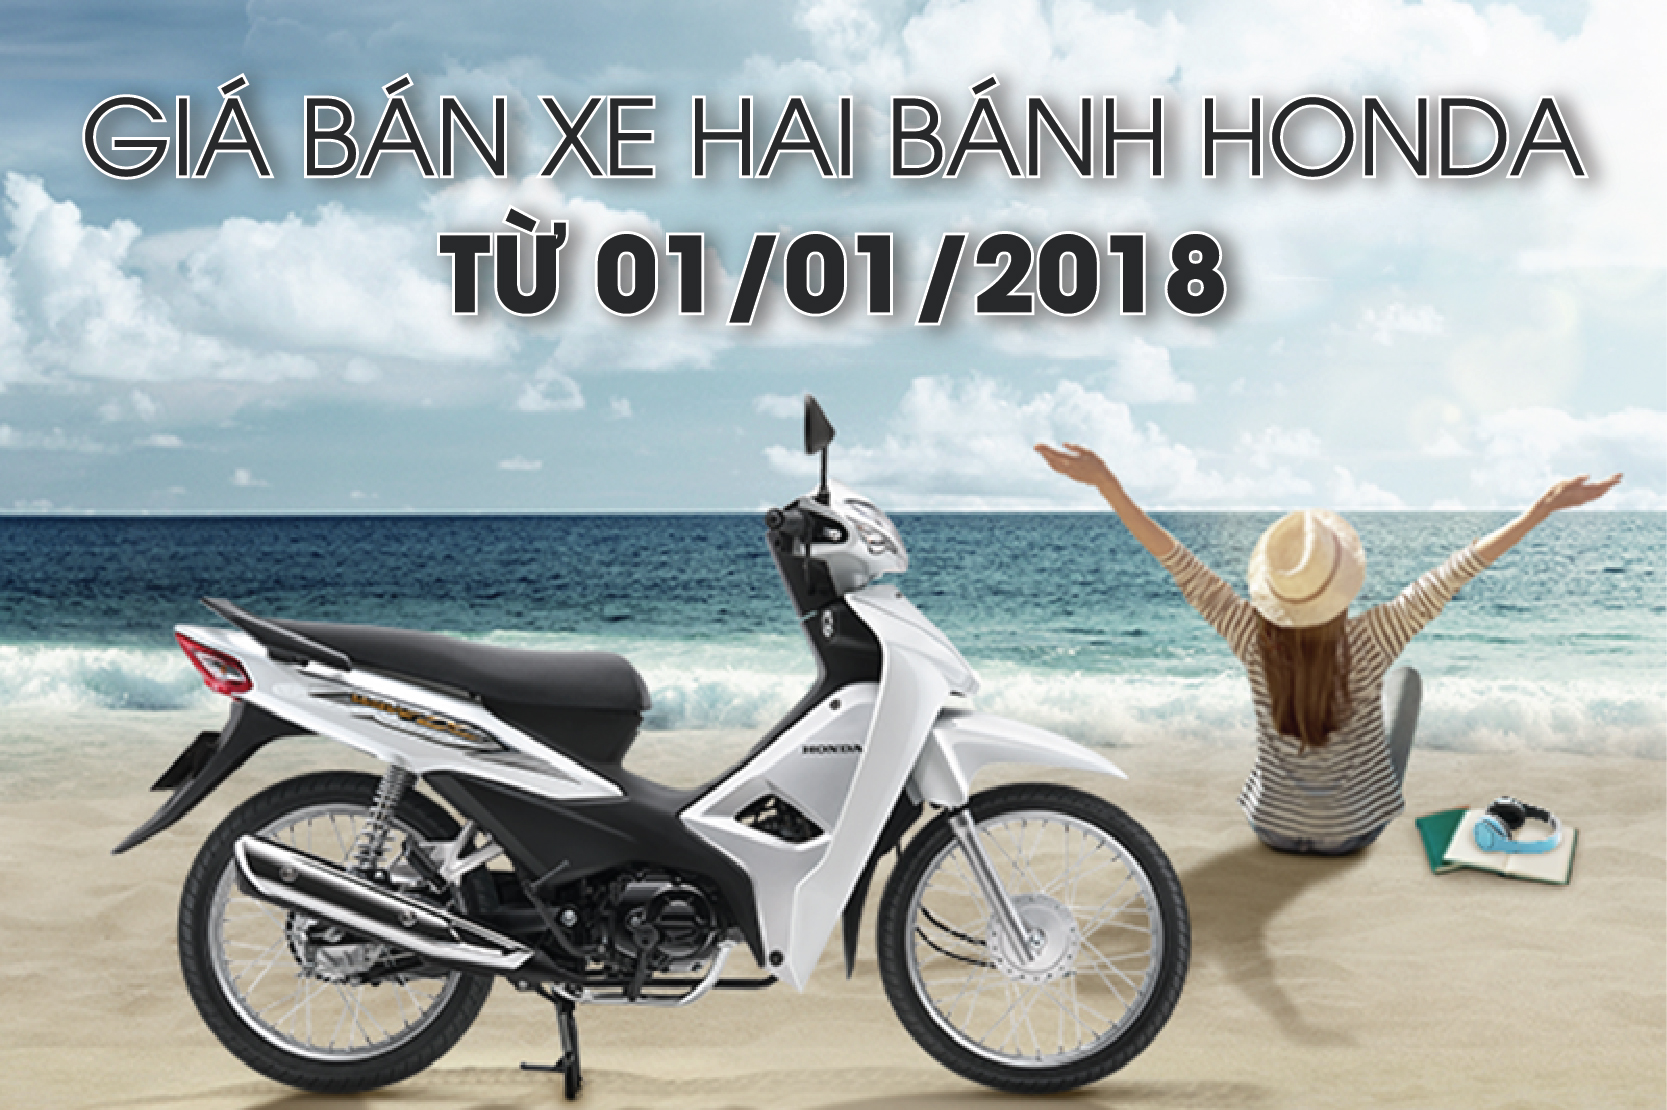 Chuyên cơ hai bánh Honda Gold Wing 2020 đầu tiên về Việt Nam có giá 12 tỷ  đồng